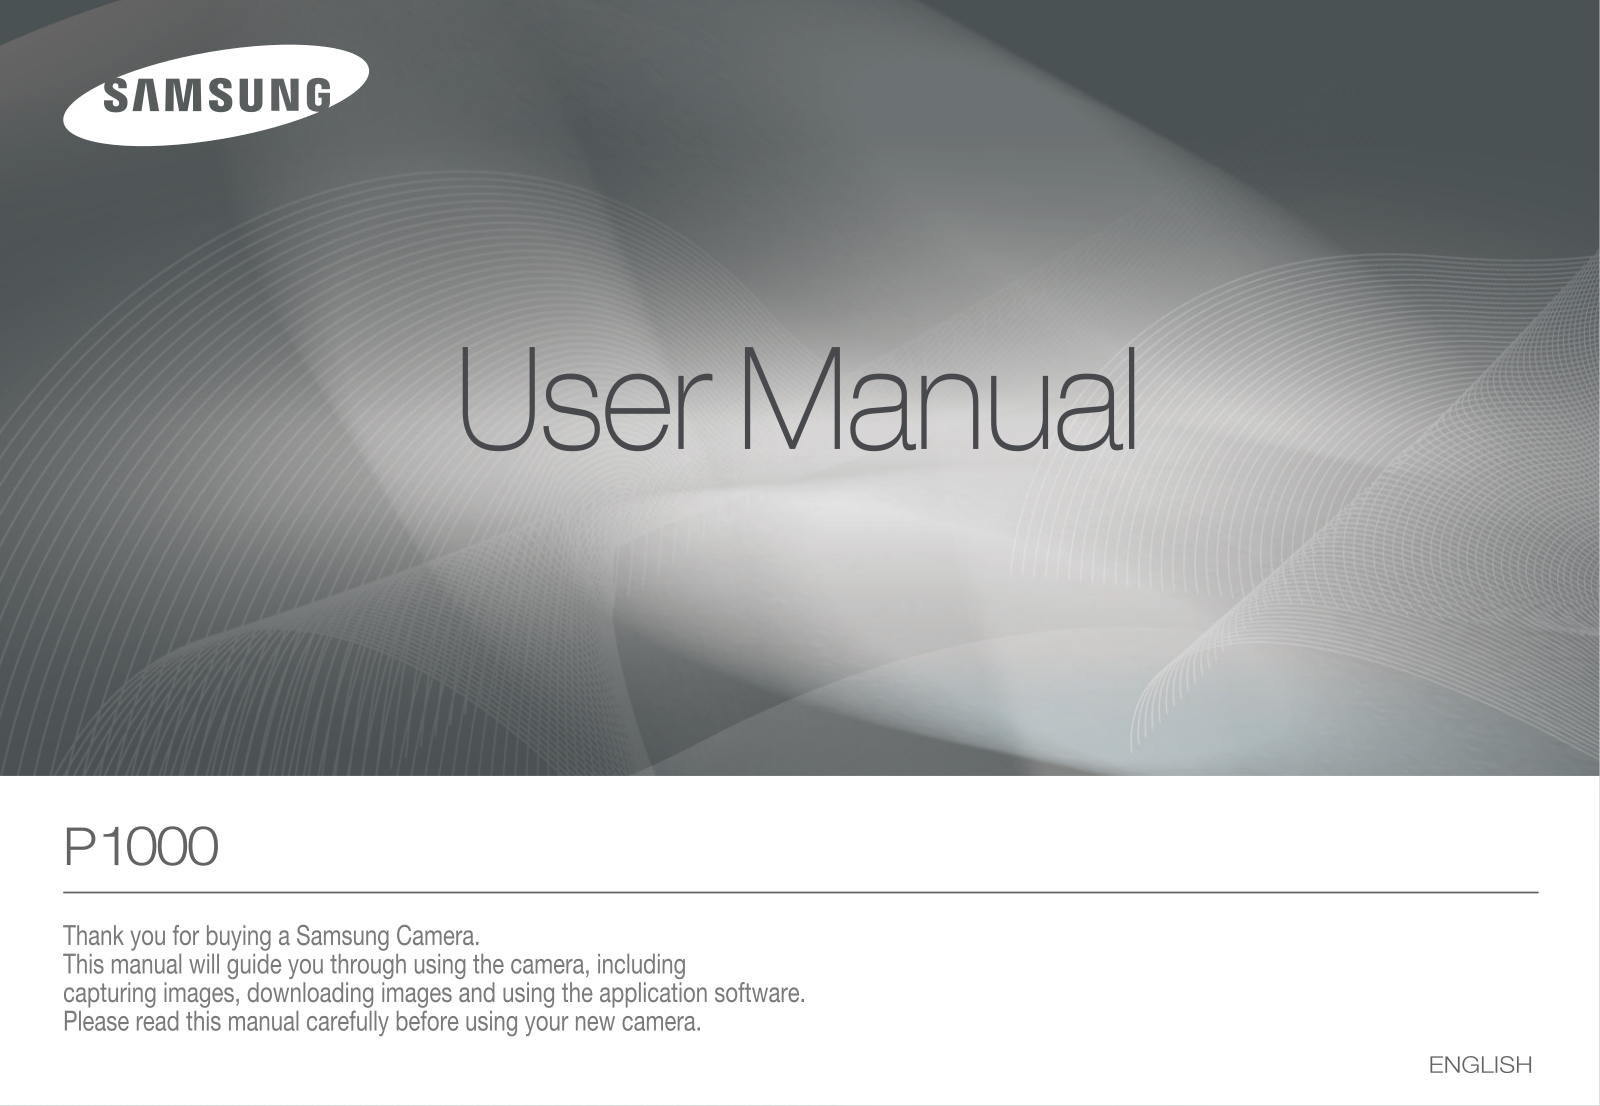 Samsung P1000, SAMSUBG P1000 User Manual